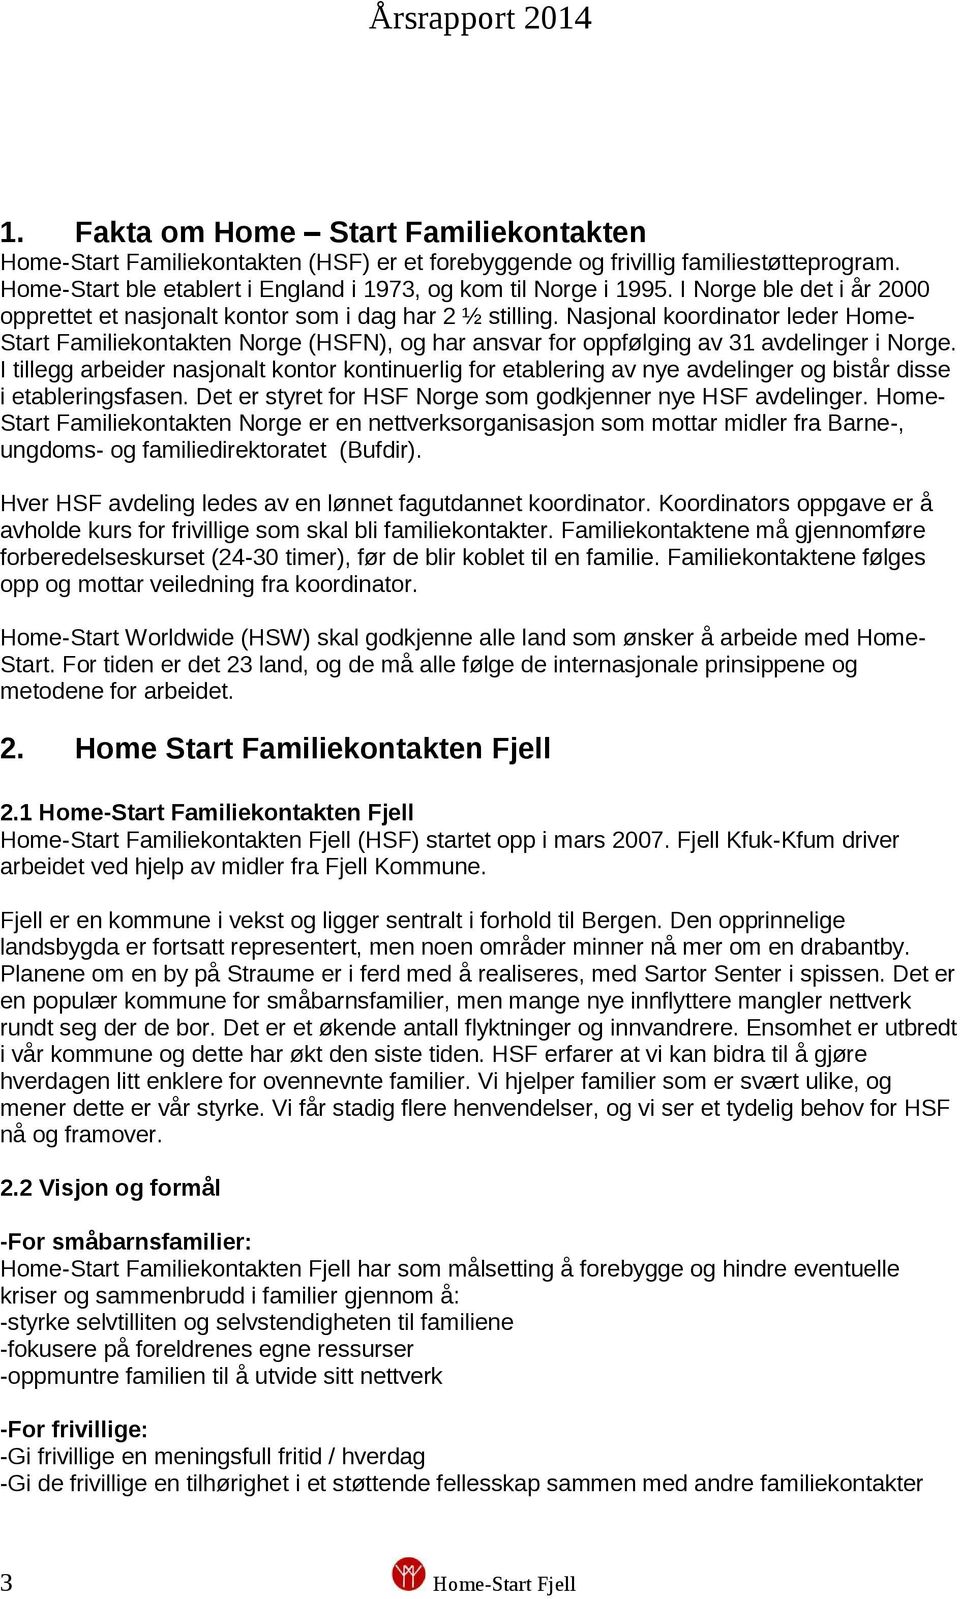 Nasjonal koordinator leder Home- Start Familiekontakten Norge (HSFN), og har ansvar for oppfølging av 31 avdelinger i Norge.